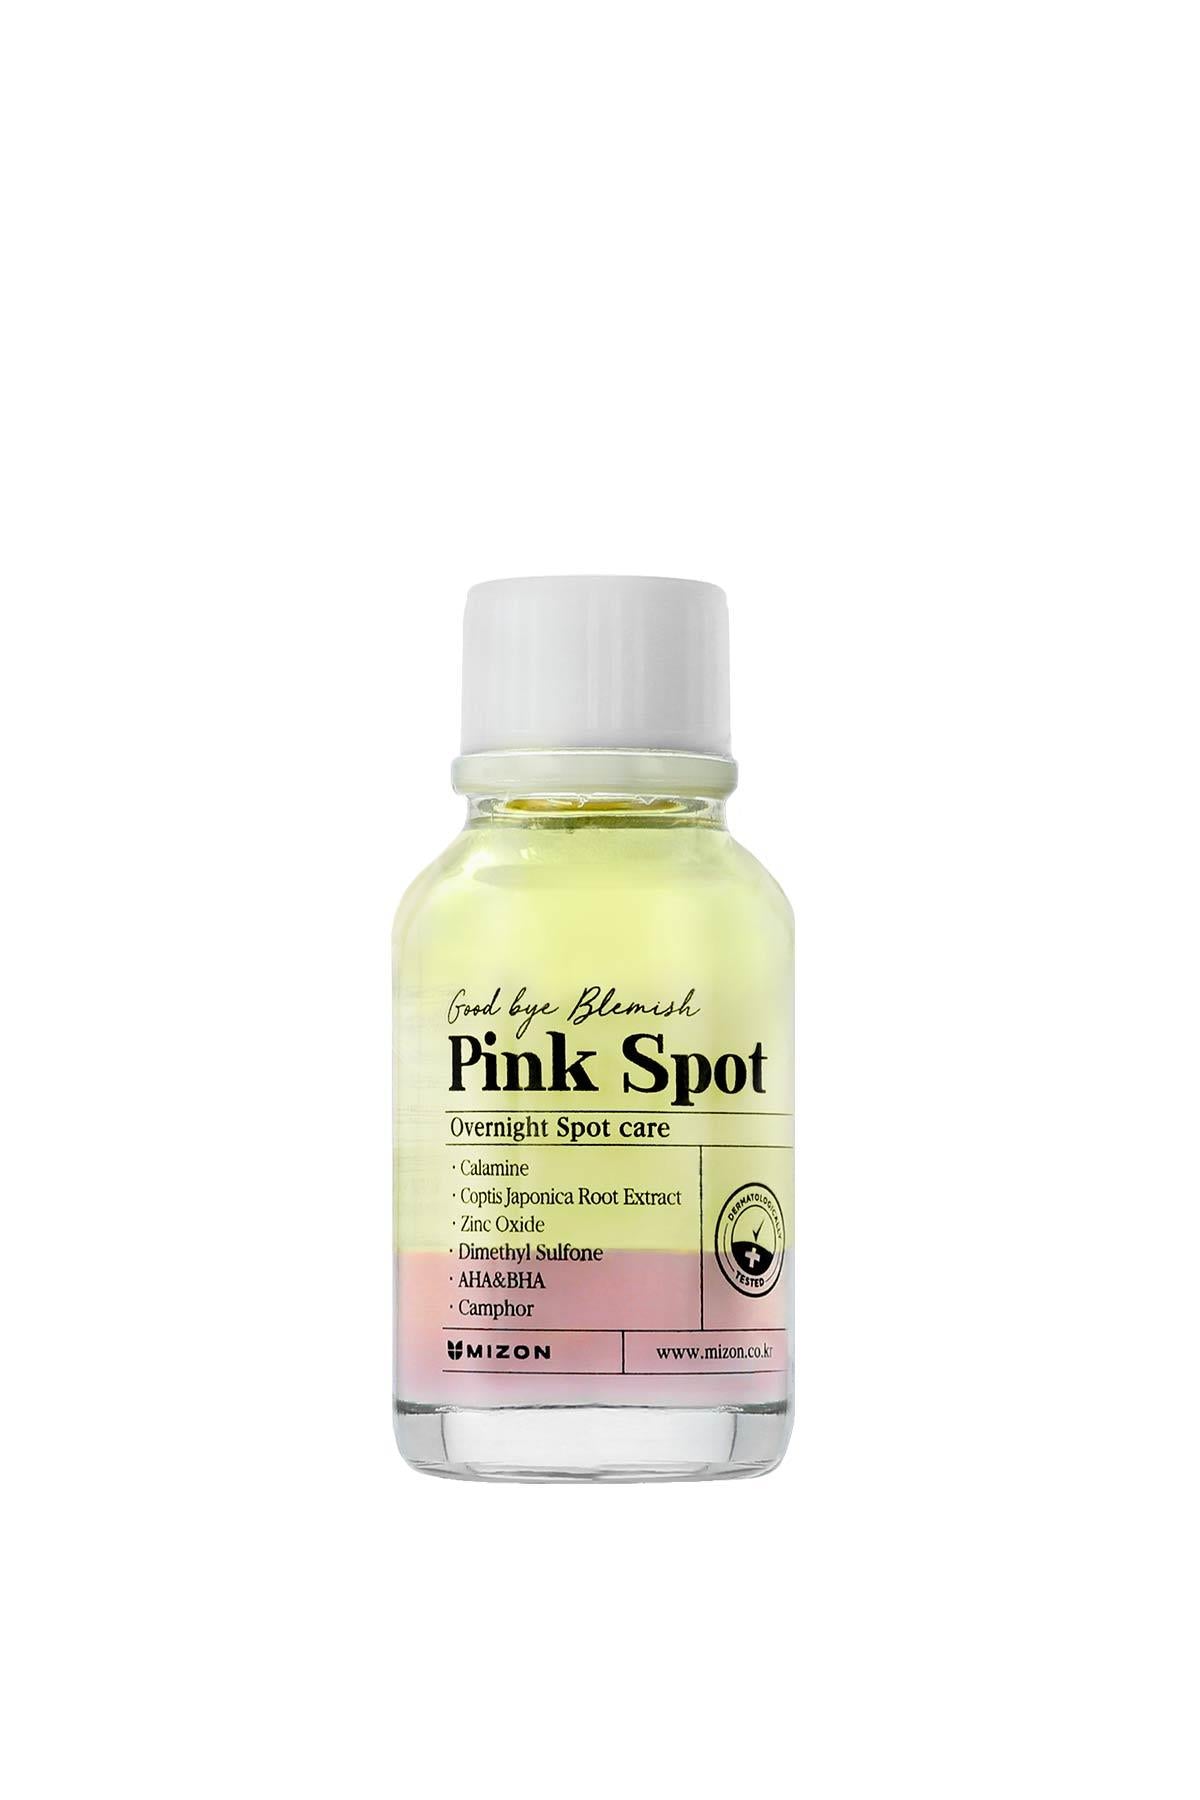 Mizon Good Bye Blemish Pink Spot 19ml – Sivilce Karşıtı 2 Basamaklı Bakım